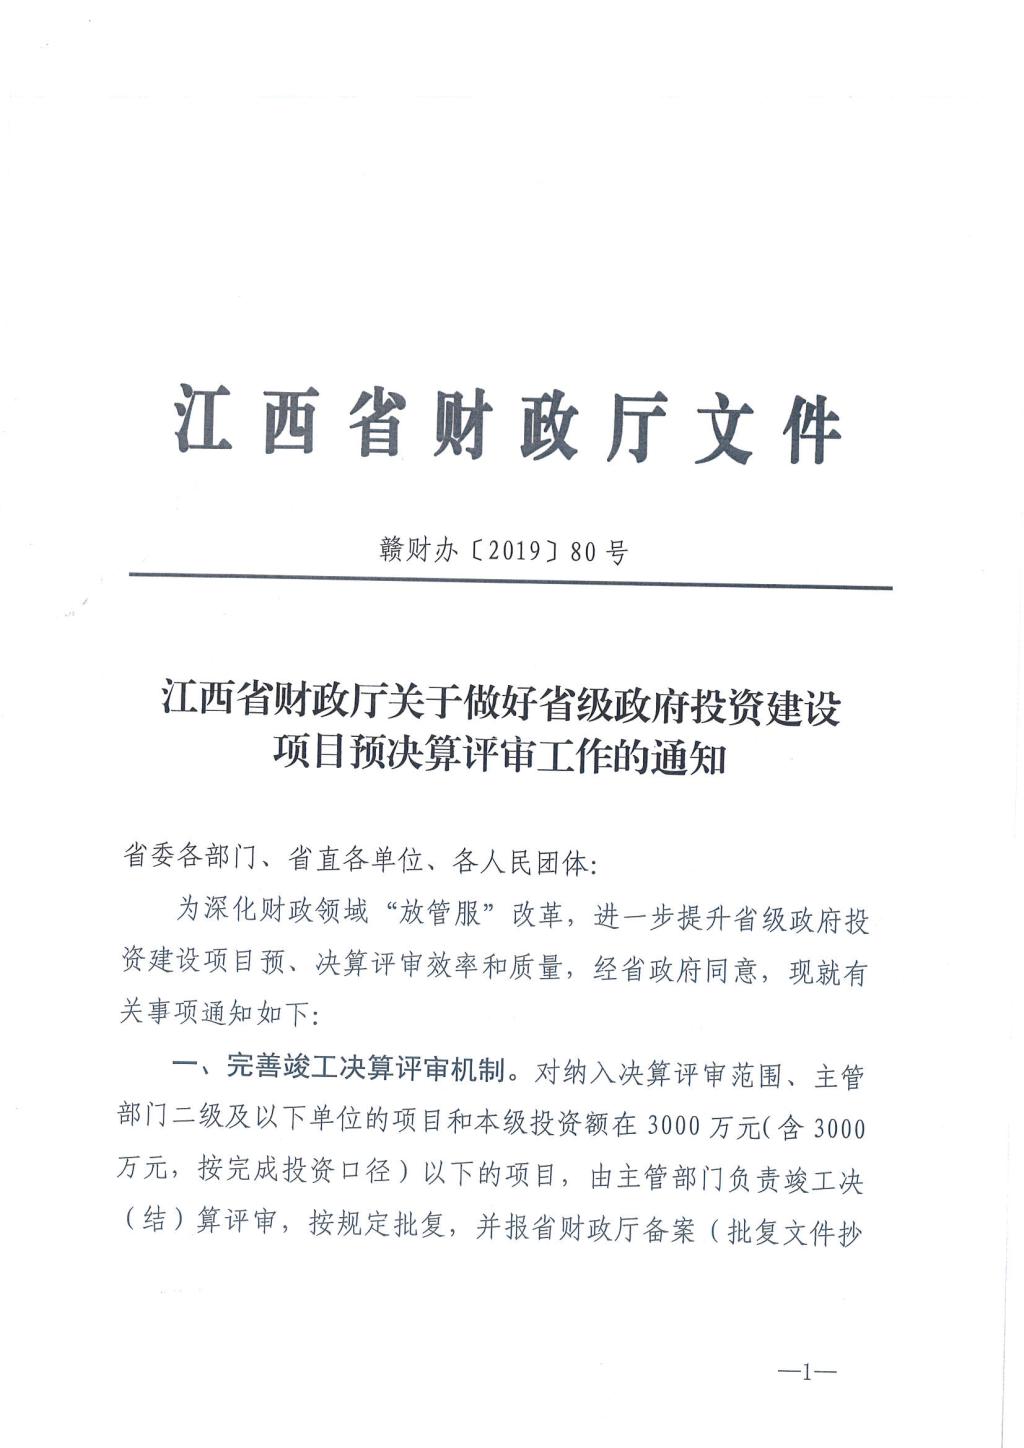 江西省省级政府投资建设项目预决算评审办法1.jpg